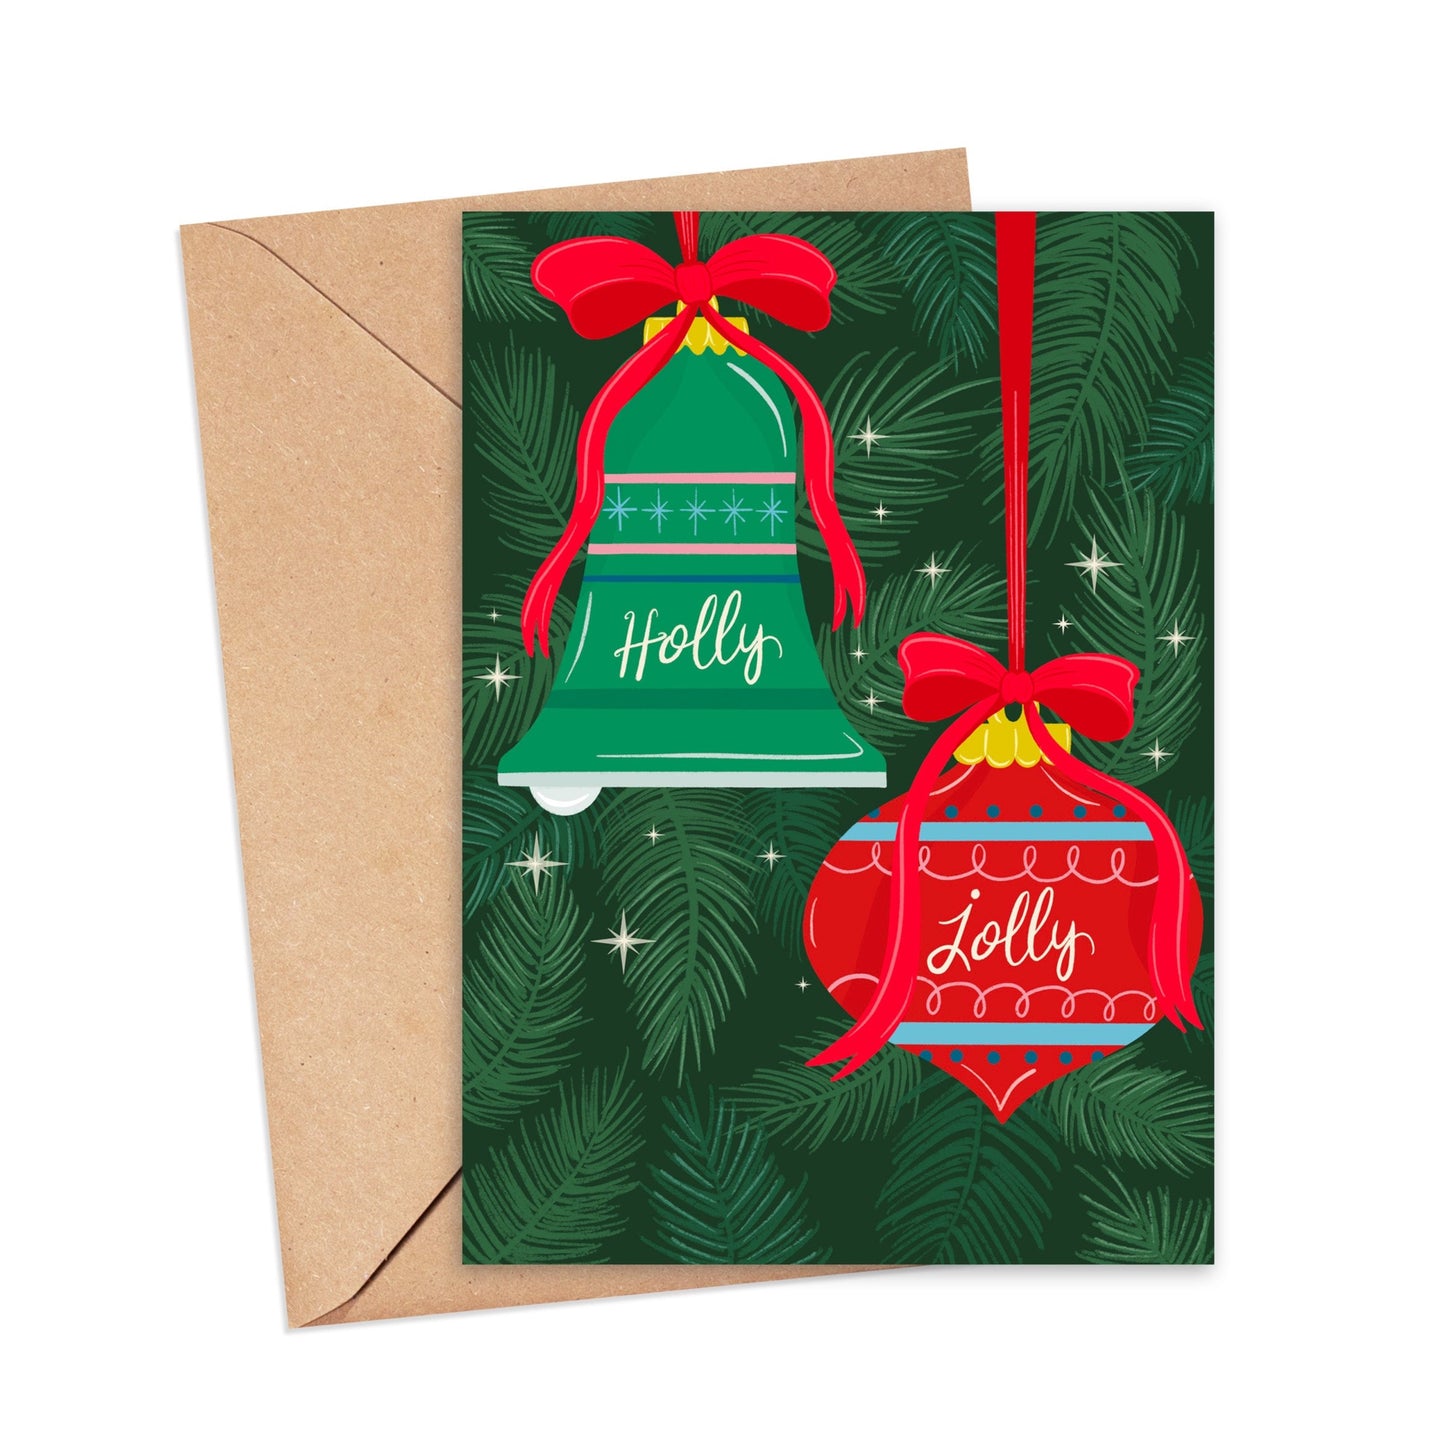 Holly Jolly Holiday Greeting Card